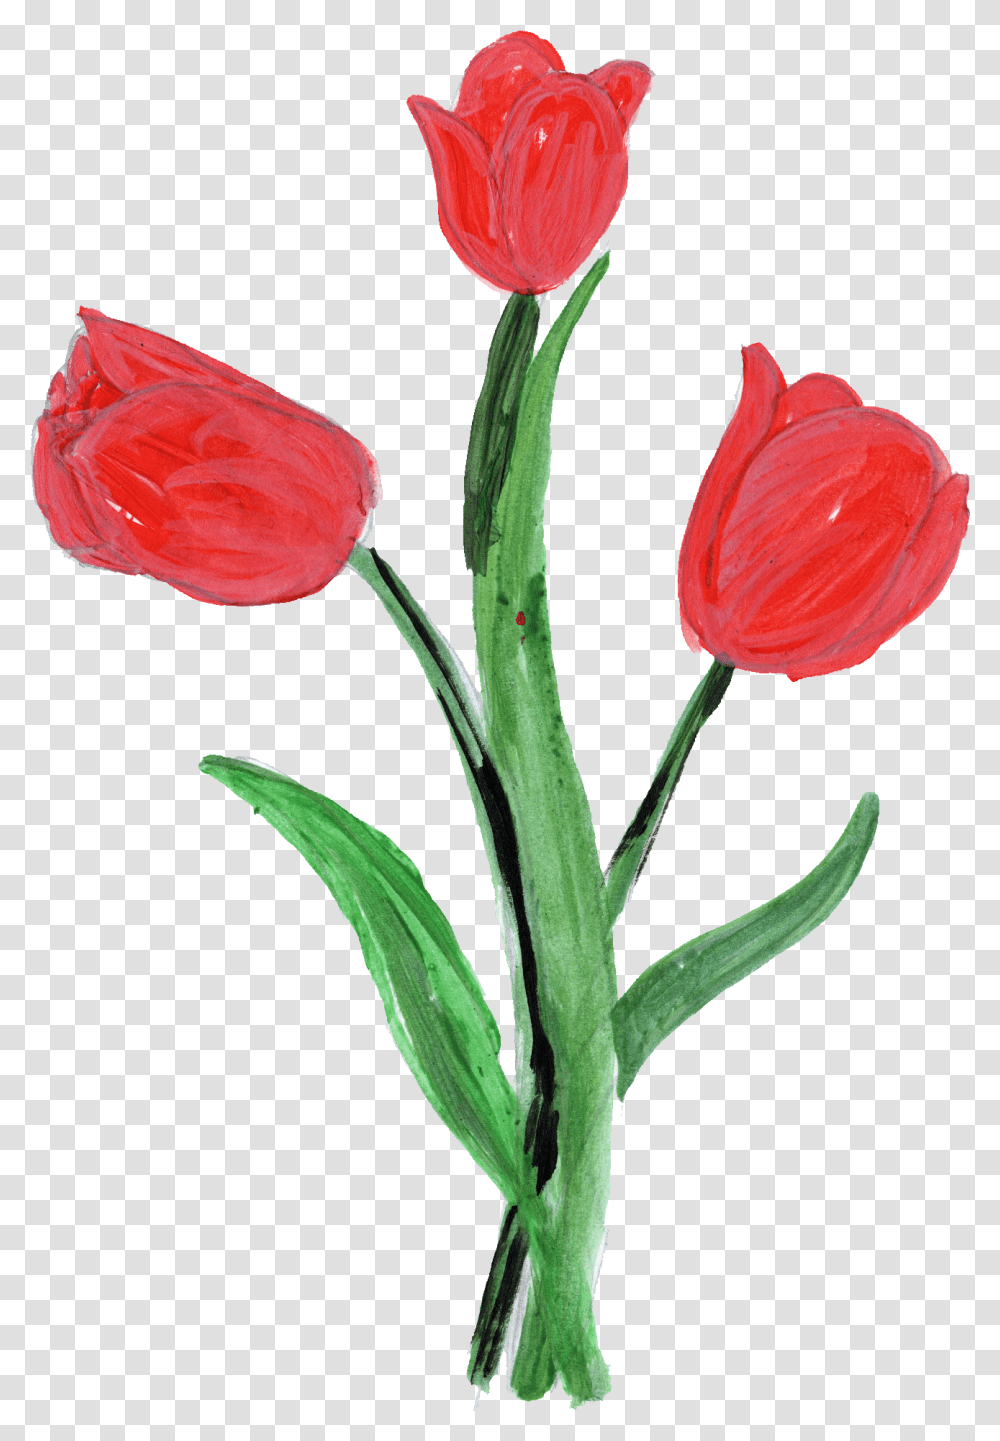 Paint Flower Onlygfxcom Painted Tulip Flower, Plant, Blossom, Petal, Flower Arrangement Transparent Png